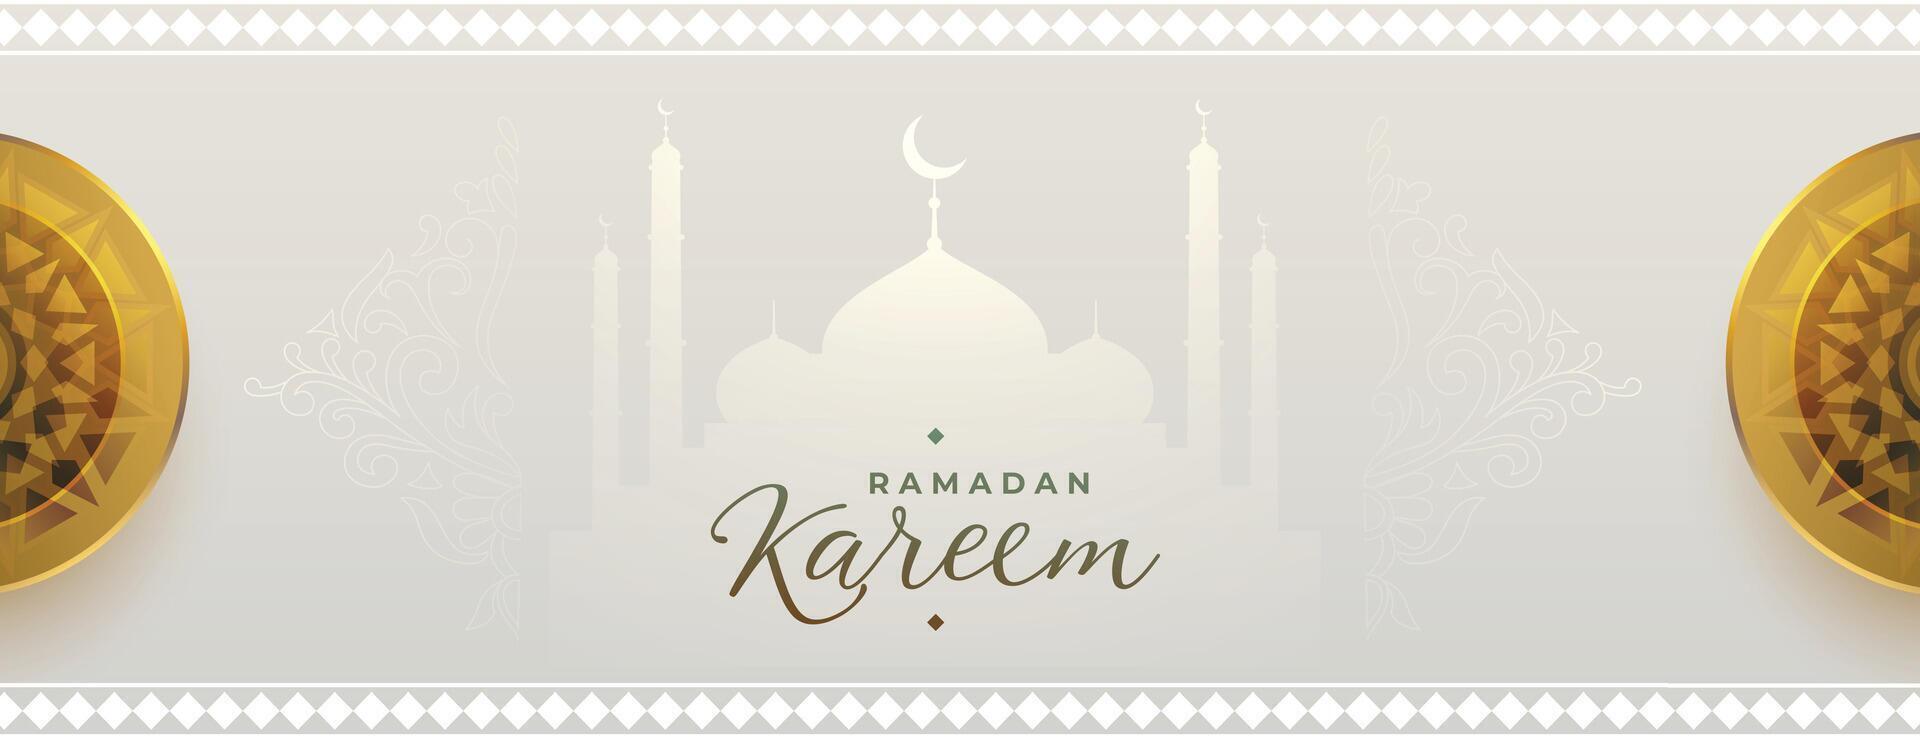 santo Ramadan iftar stagione bandiera saluto design vettore